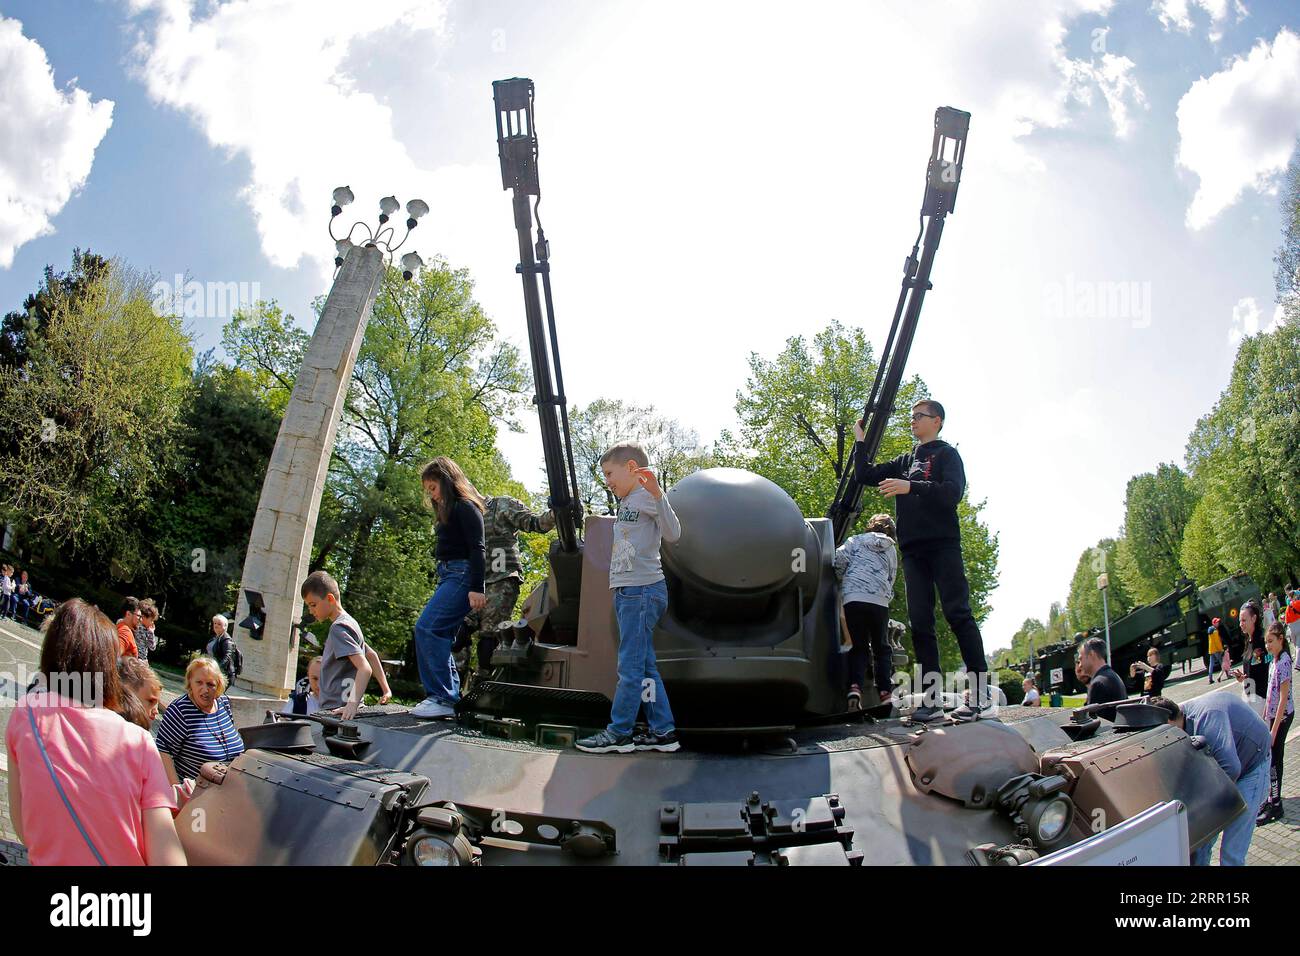 230424 -- BUKAREST, 24. April 2023 -- Kinder haben Spaß auf einem gepanzerten Fahrzeug bei einer statischen Ausstellung von militärischer Ausrüstung anlässlich des rumänischen Landstreitungstages in einem Park in Bukarest, Hauptstadt von Rumänien, 23. April 2023. Foto von /Xinhua RUMÄNIEN-BUKAREST-LAND STREITKRÄFTE TAGESAUSSTELLUNG CristianxCristel PUBLICATIONxNOTxINxCHN Stockfoto